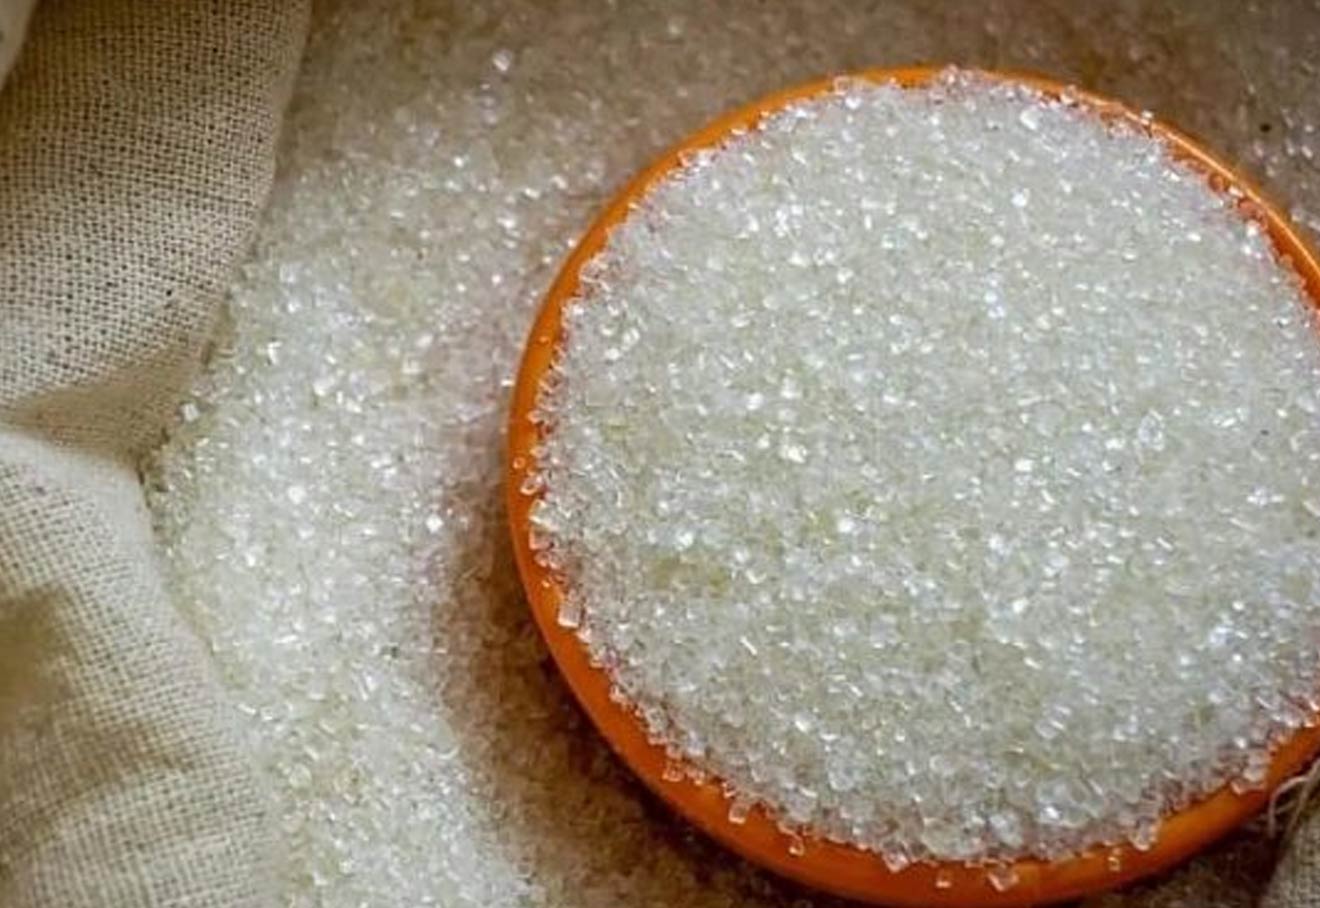 India May Ban Sugar Exports From Oct